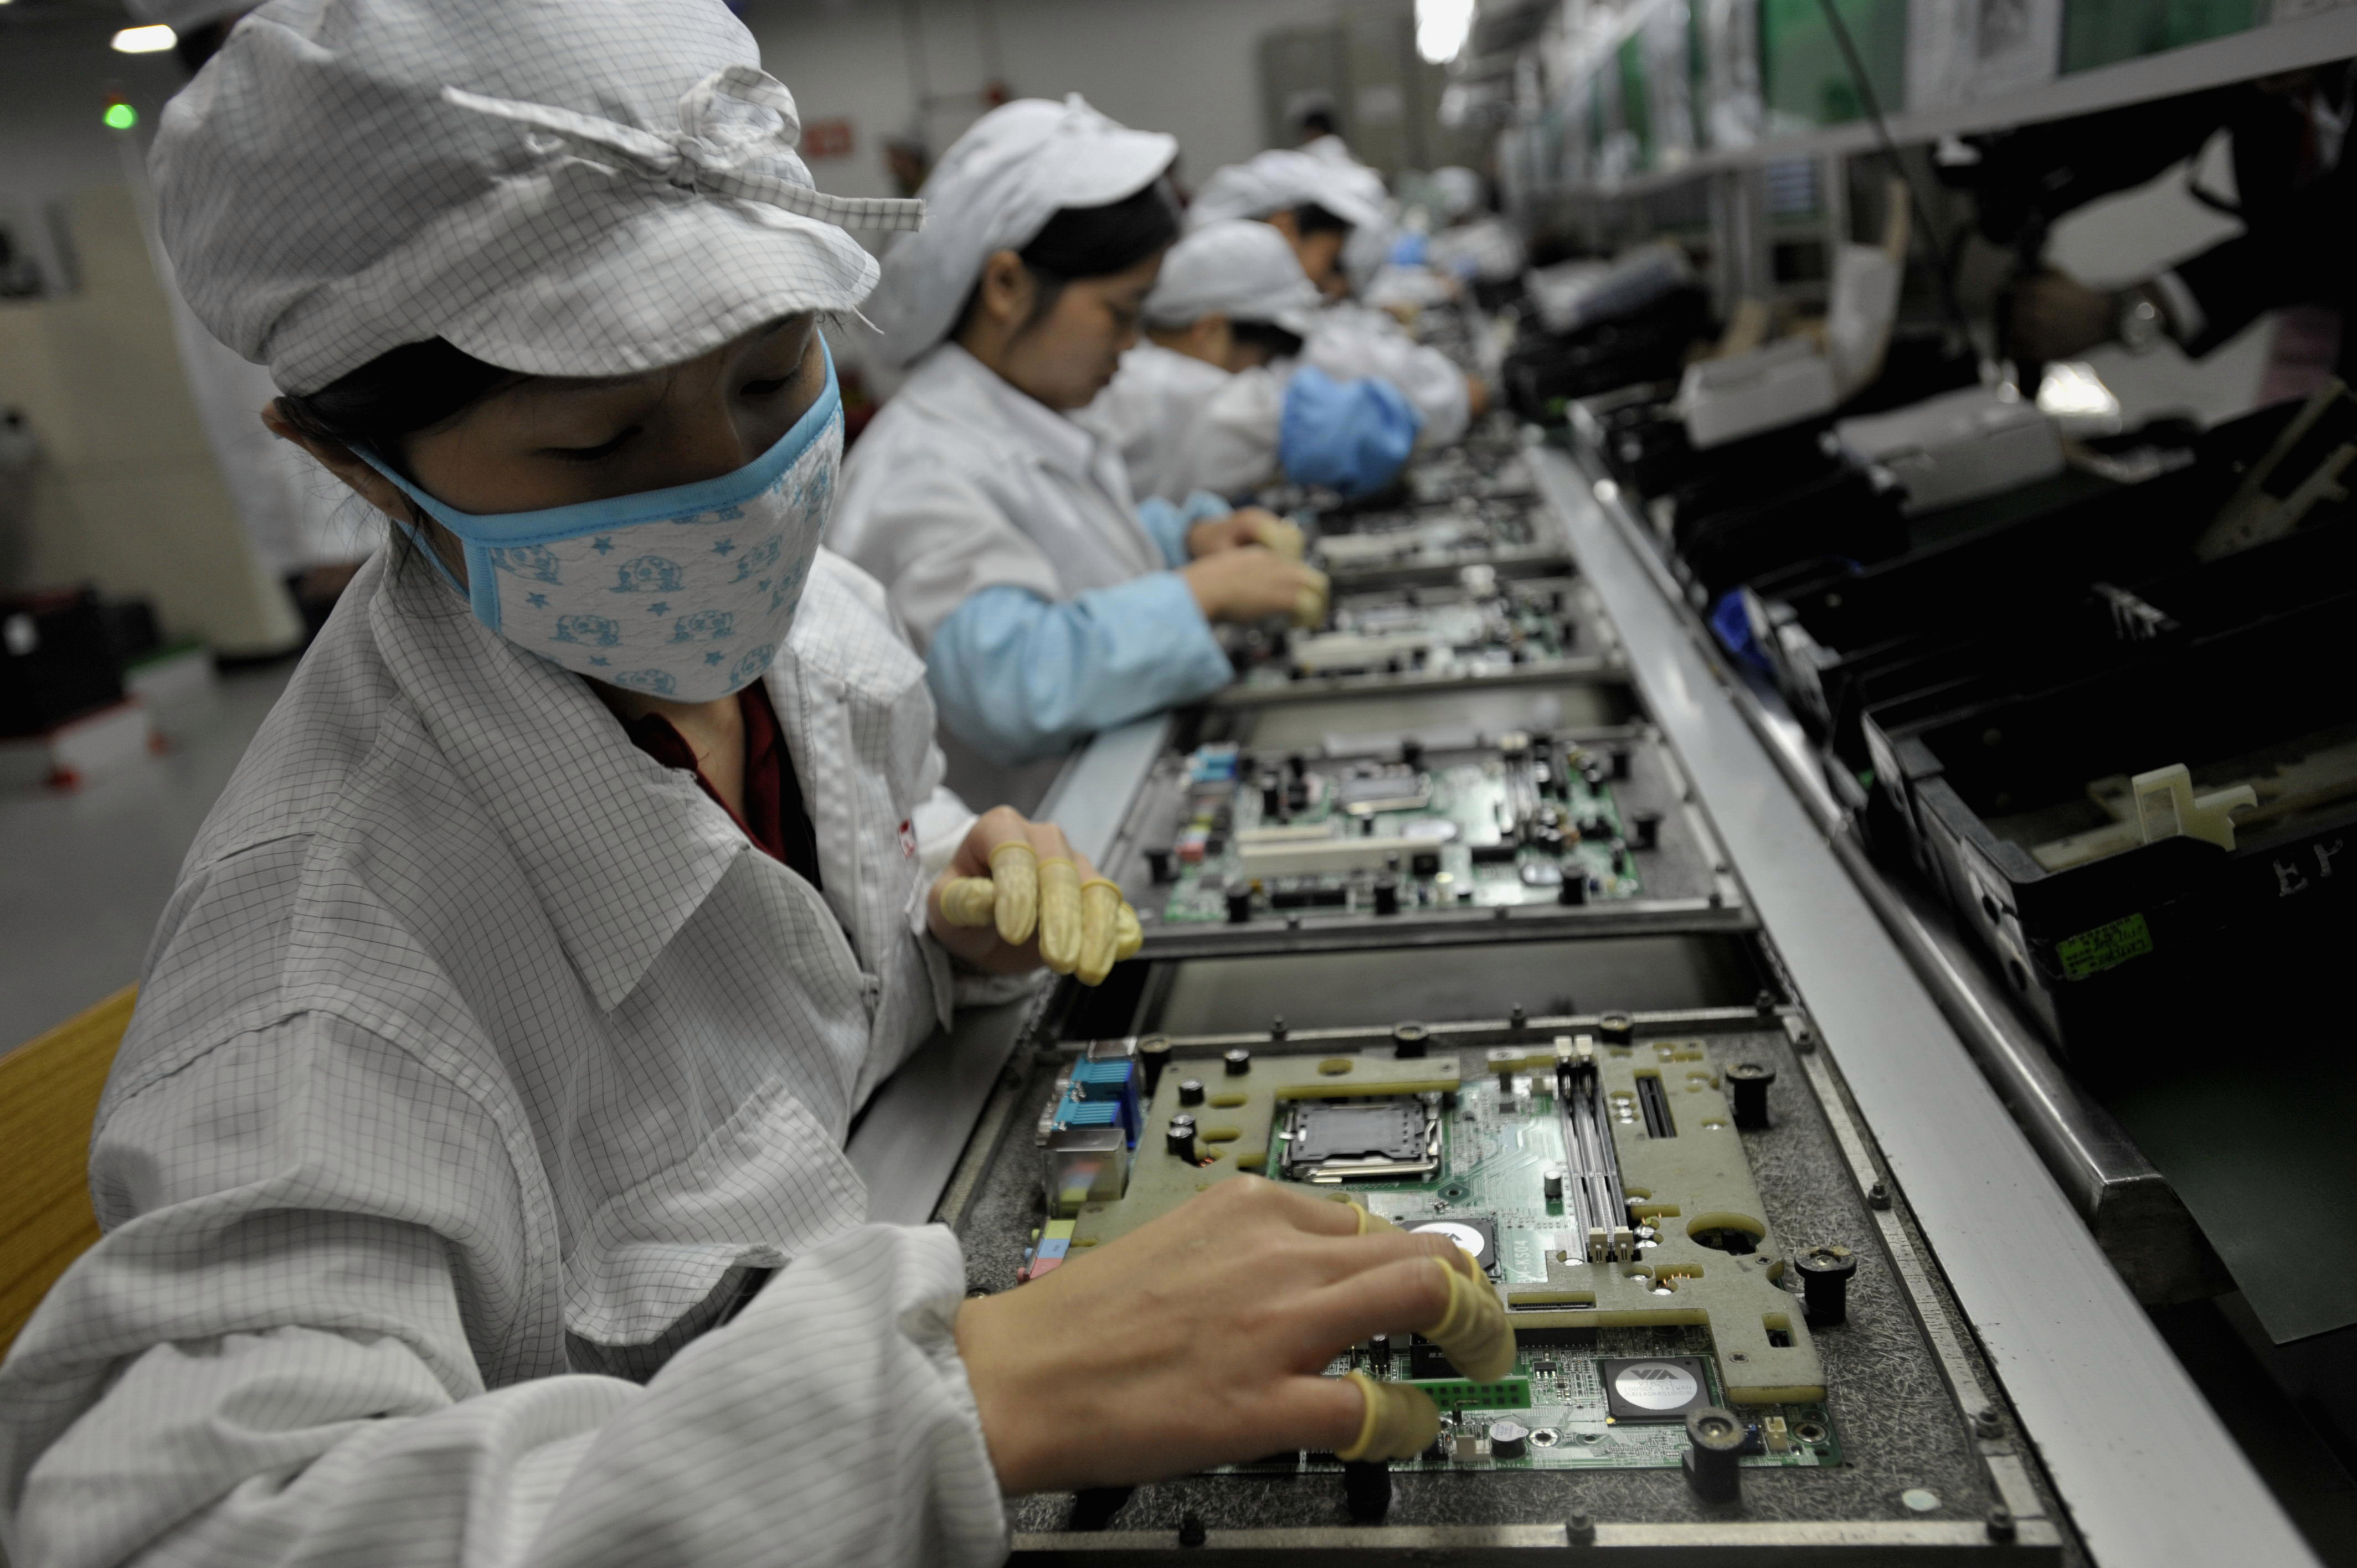   Рабочие на заводе Foxconn в Китае. По сообщениям, подростков-интернов заставили работать на изнурительную смену. Amazonпродукты, благотворительность сказал